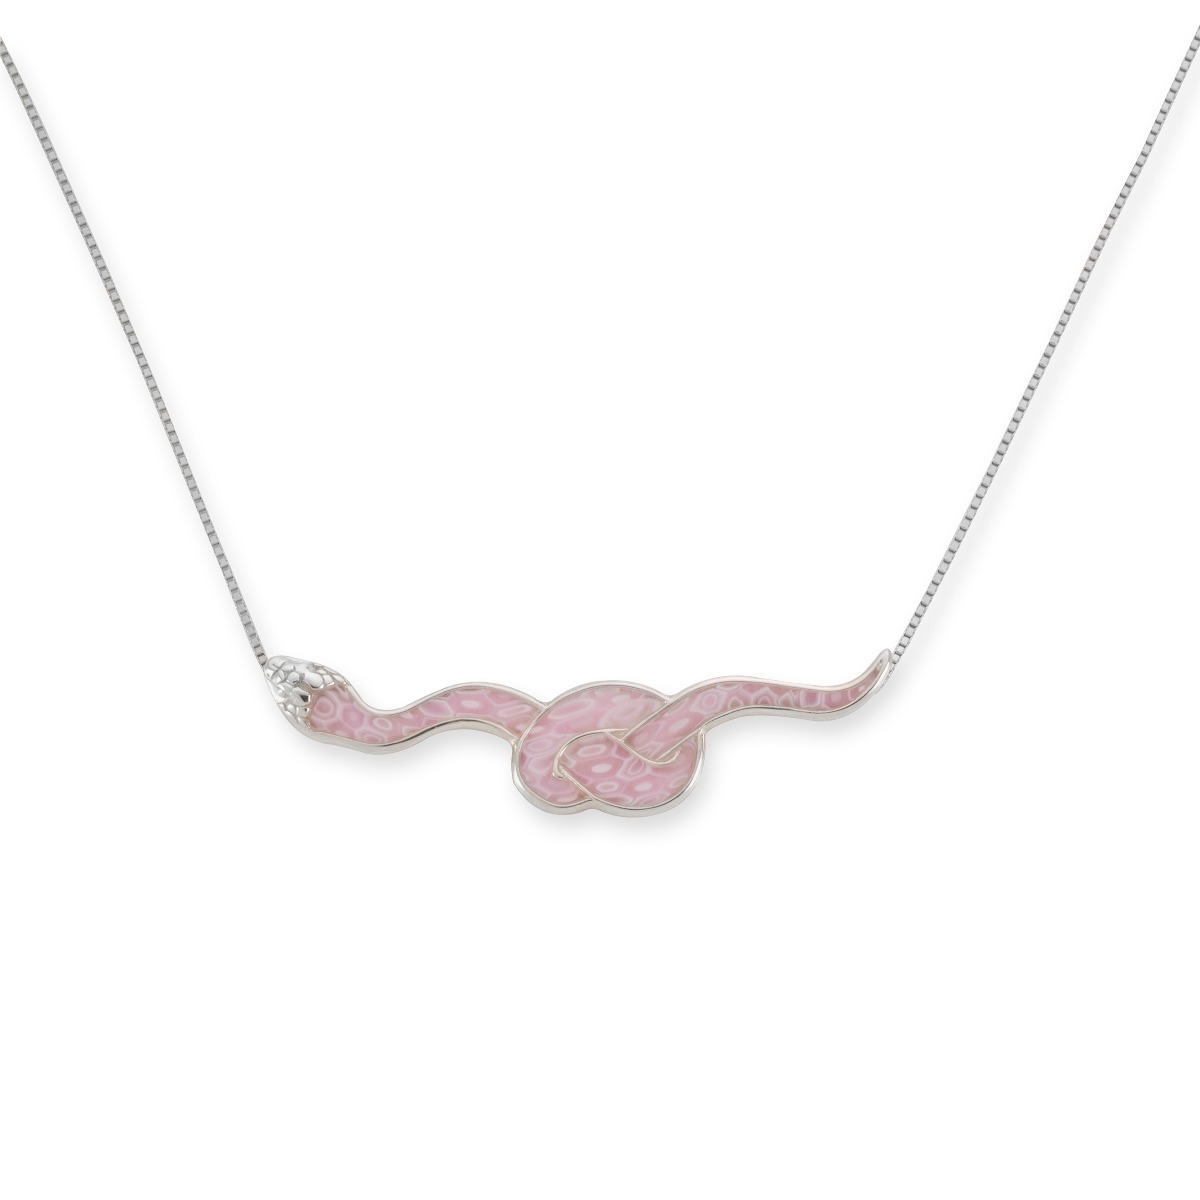 Adina Plastelina Silver Snake Necklace – Rose Quartz  - 1